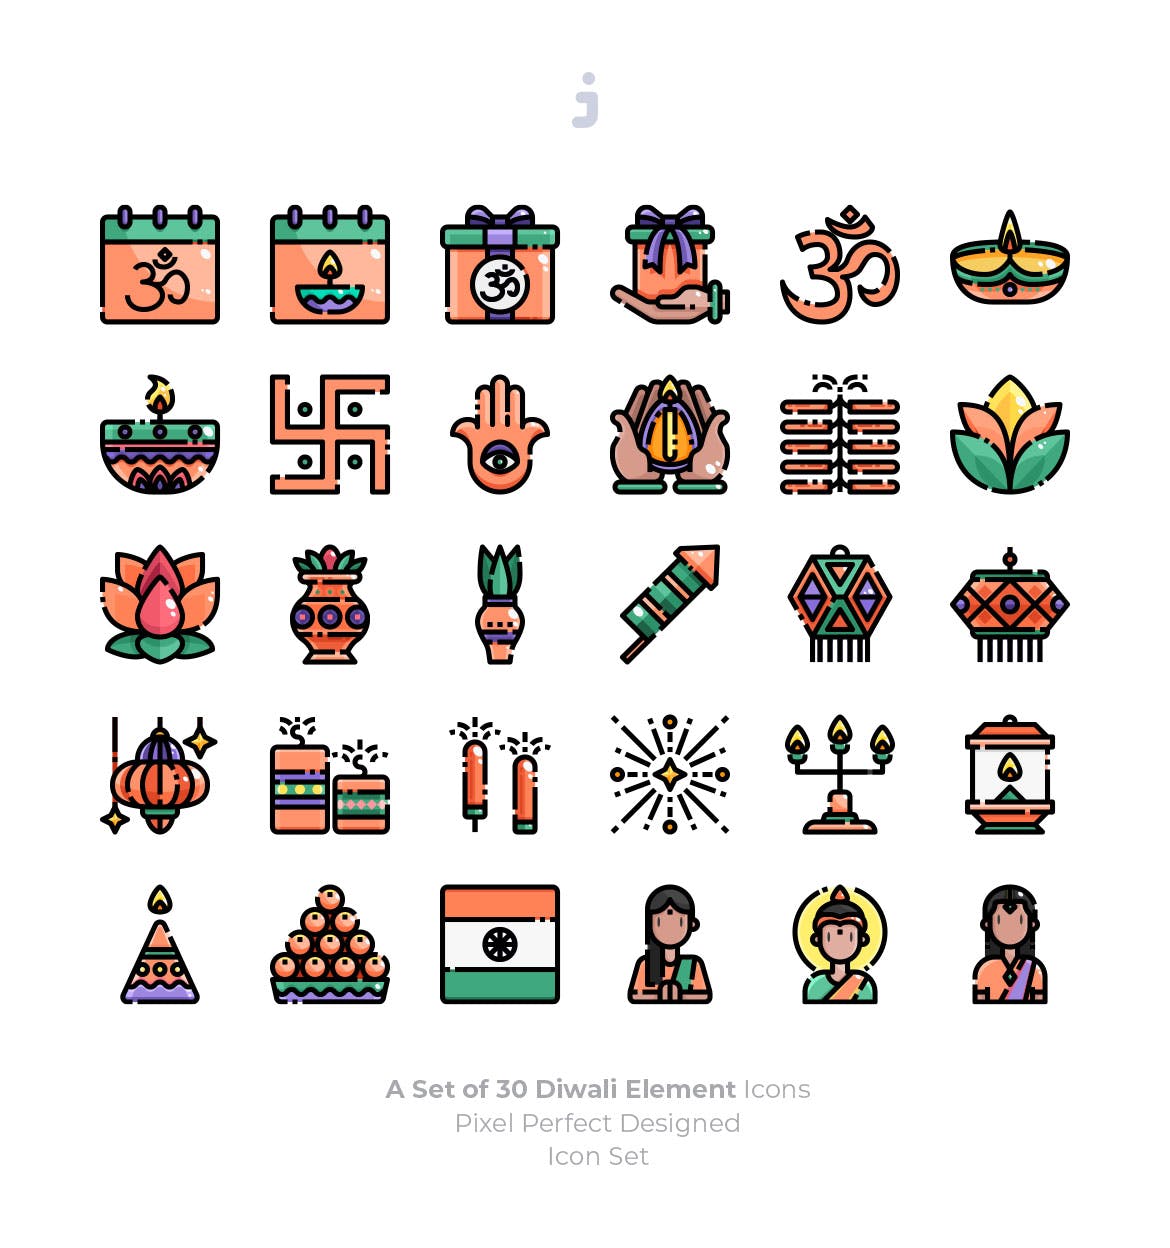 印度万灯节排灯节节日主题图标素材 30 Diwali Ico